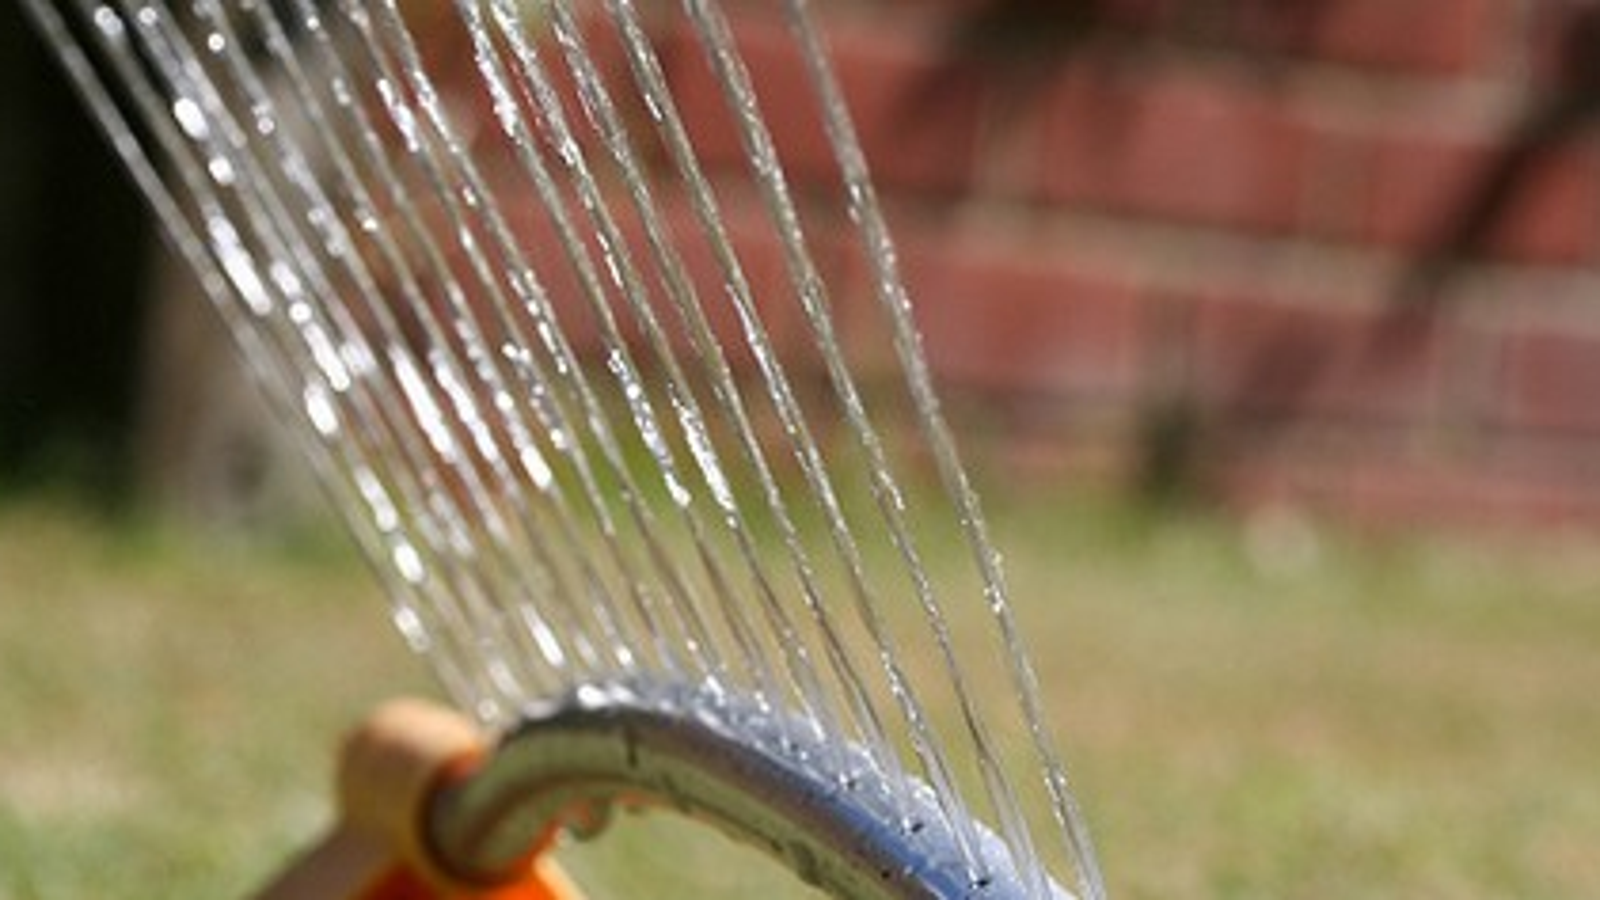 automatic watering seedlings sprinkler